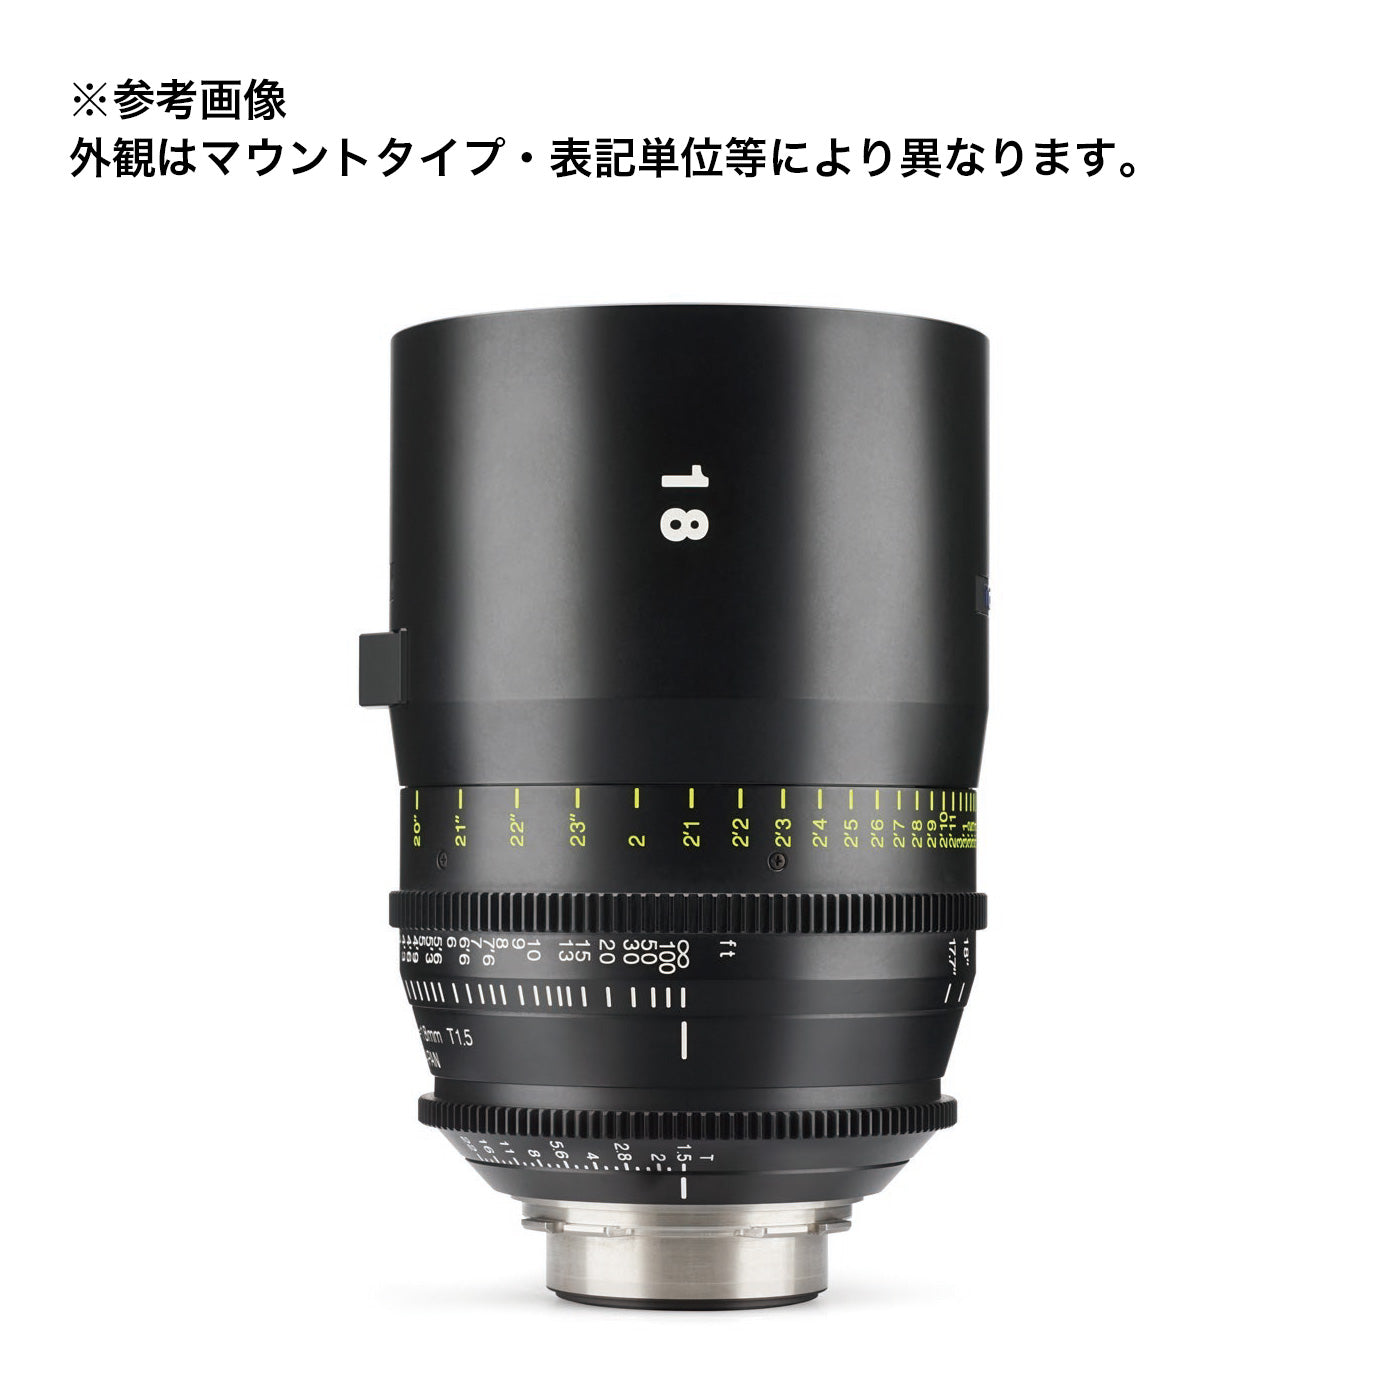 Tokina(トキナー) シネマプライムレンズ VISTA 18mm T1.5 CINEMA LENS PLマウント フィート表記 [264142]